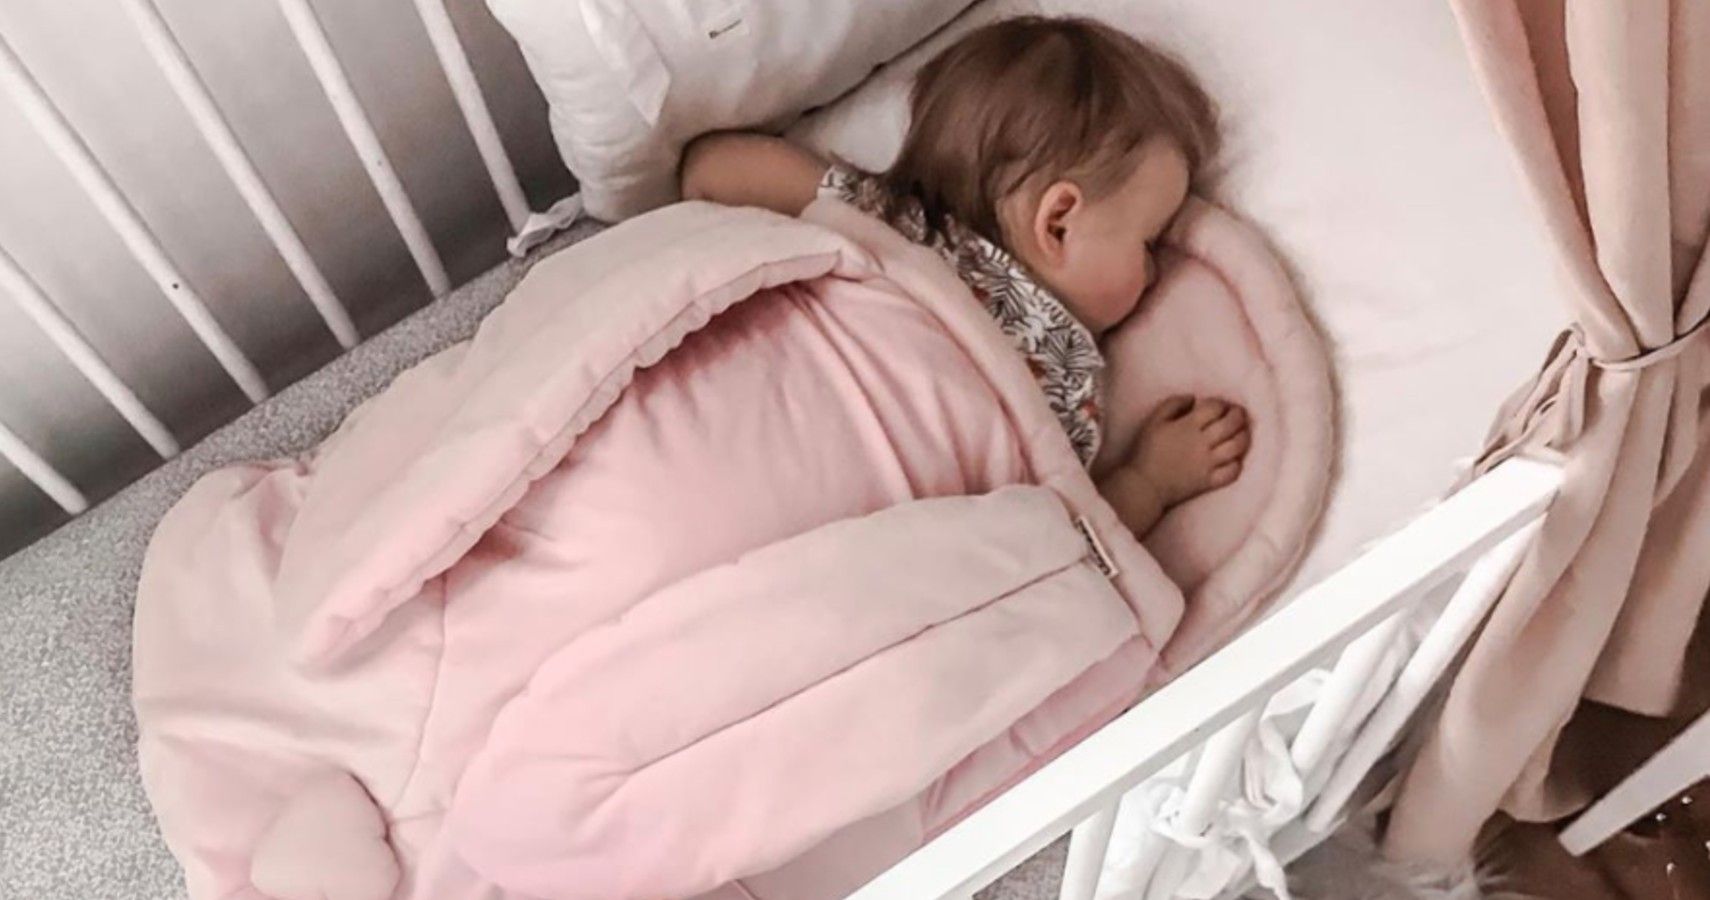 Baby sleeping in sleeping bag inside of a crib.